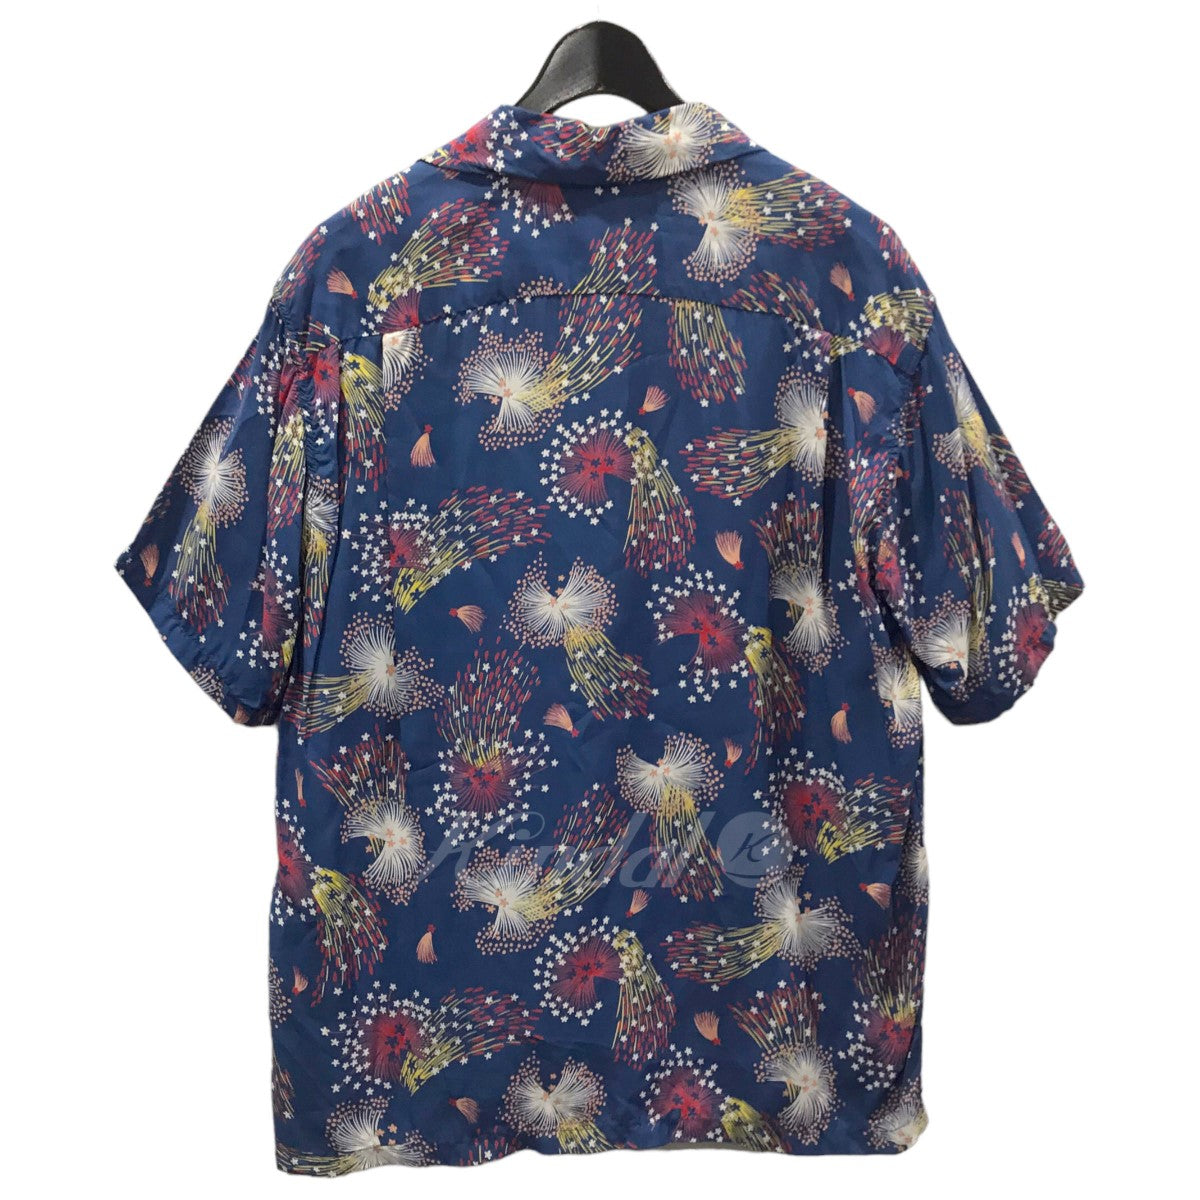 SUN SURF × JOURNAL STANDARD 花火プリントオープンカラー半袖シャツ 